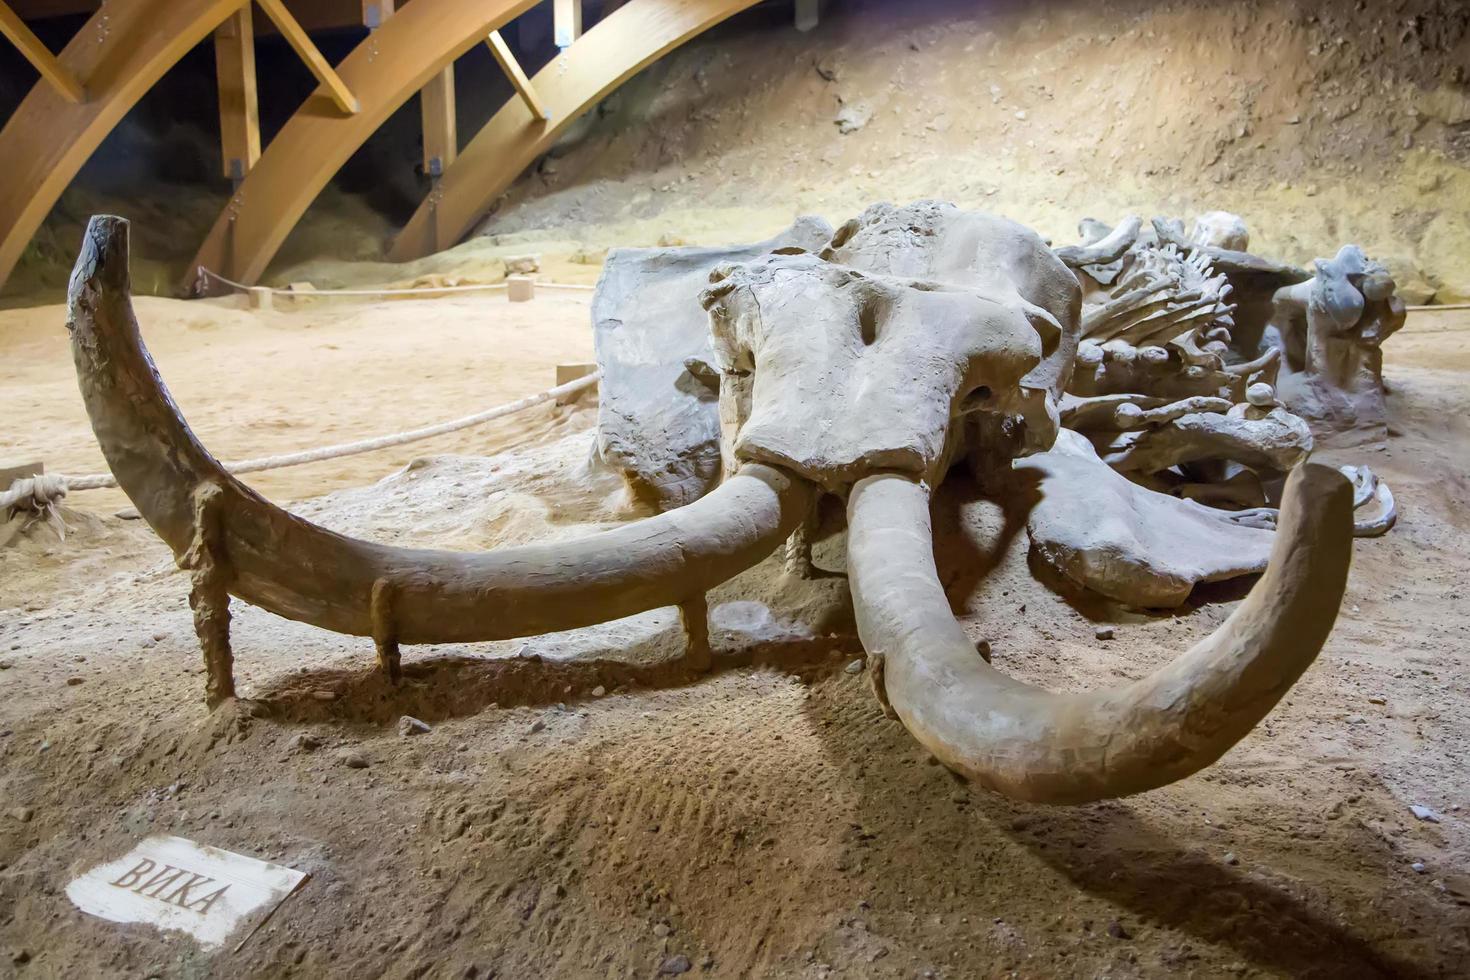 kostolac, serbie, 2014 - restes de mammouth sur le site archéologique de viminacium près de kostolac, serbie. mammouth, nommé vika, est une femelle adulte de 6 mètres de long avec un squelette entier préservé. photo